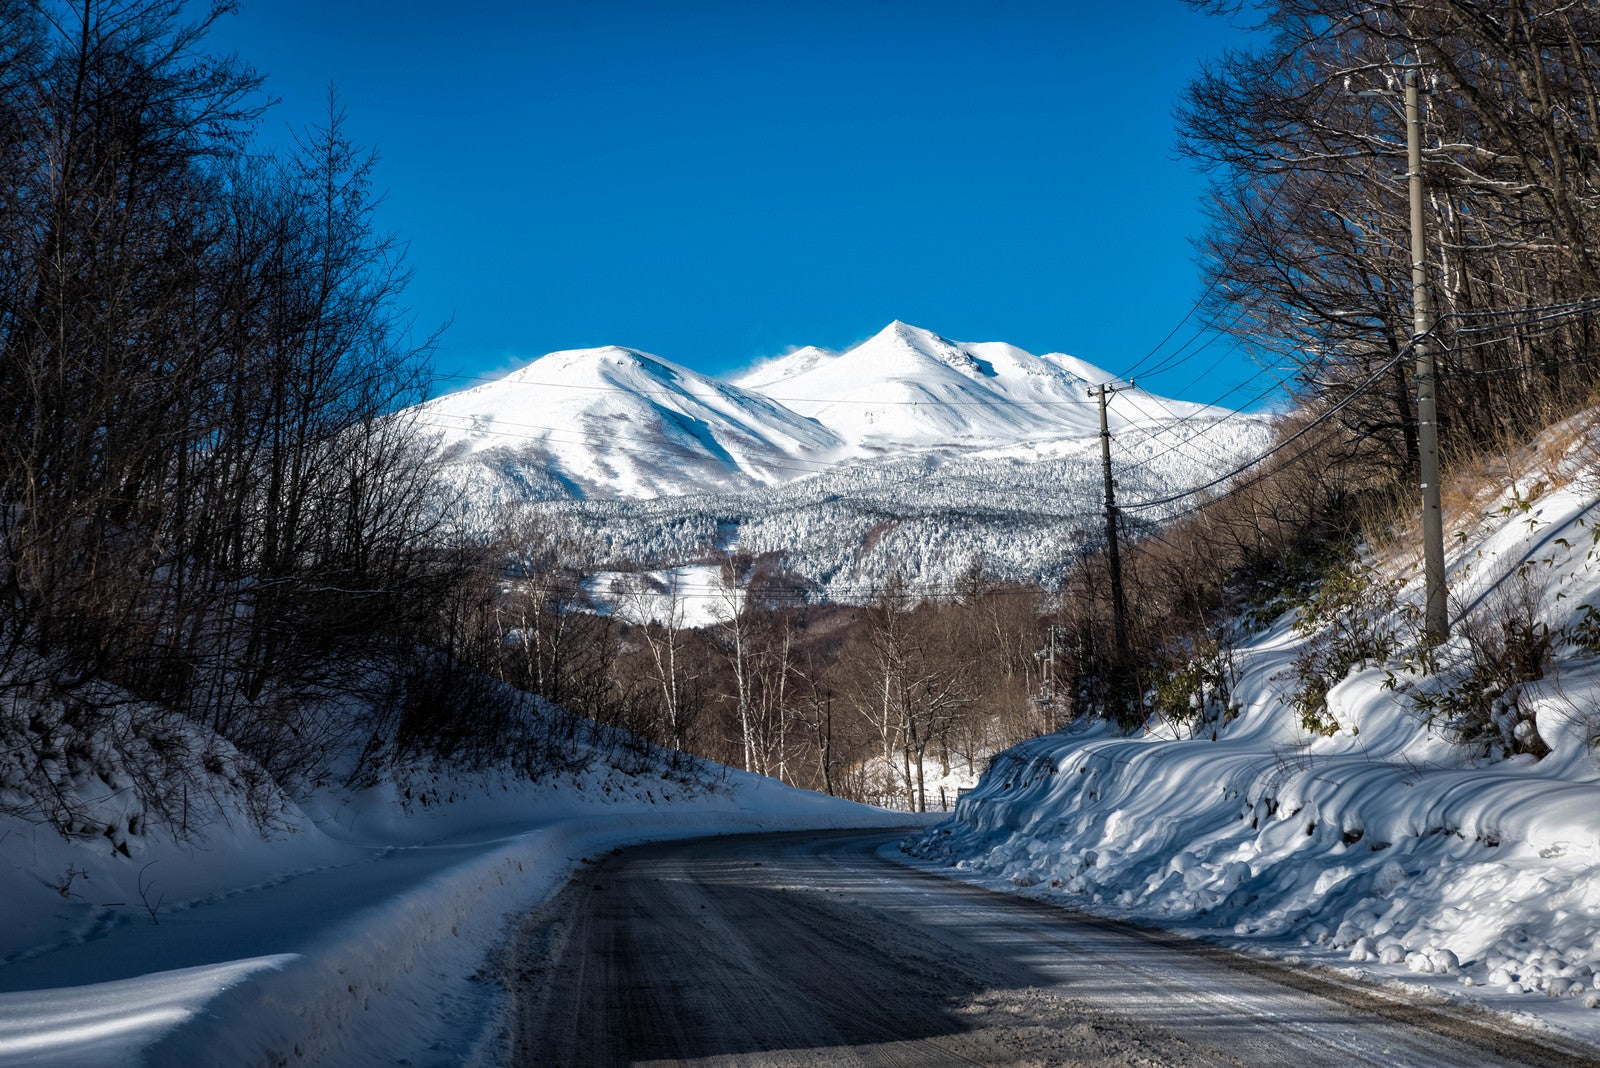 「乗鞍岳へと続く残雪の道路」の写真